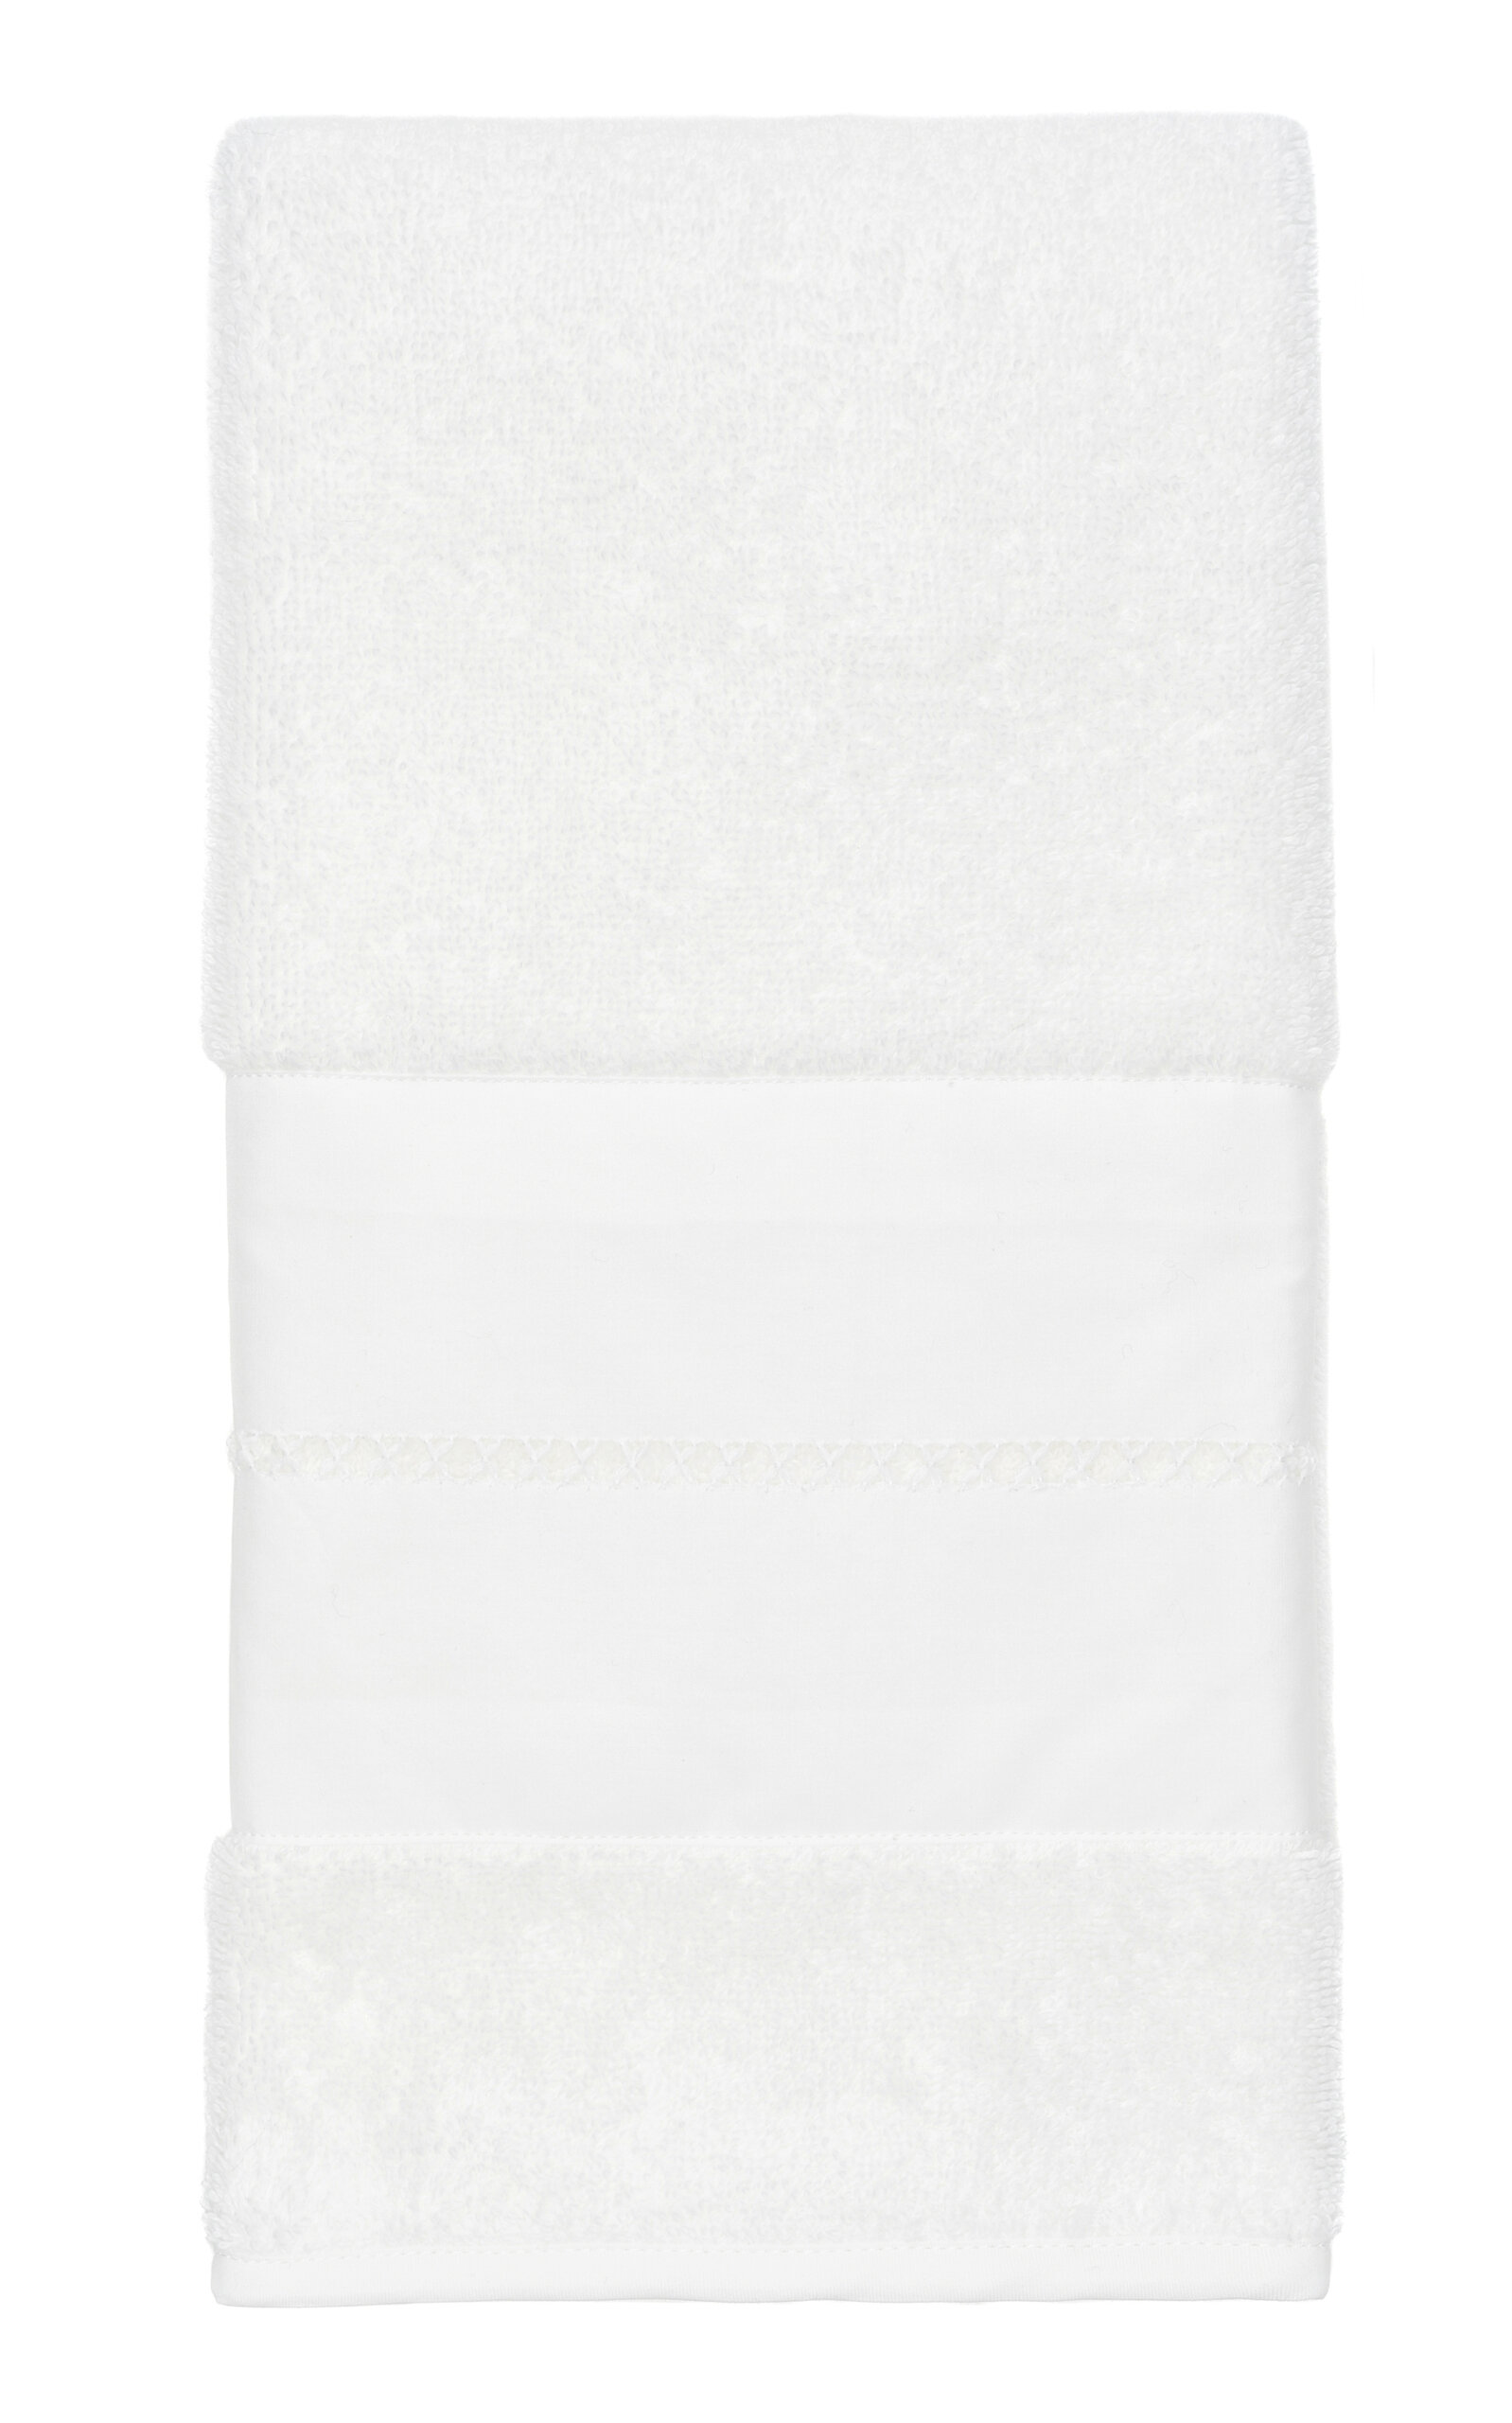 Vis-a-vis Paris Belle De Jour Terry Guest Towel In White